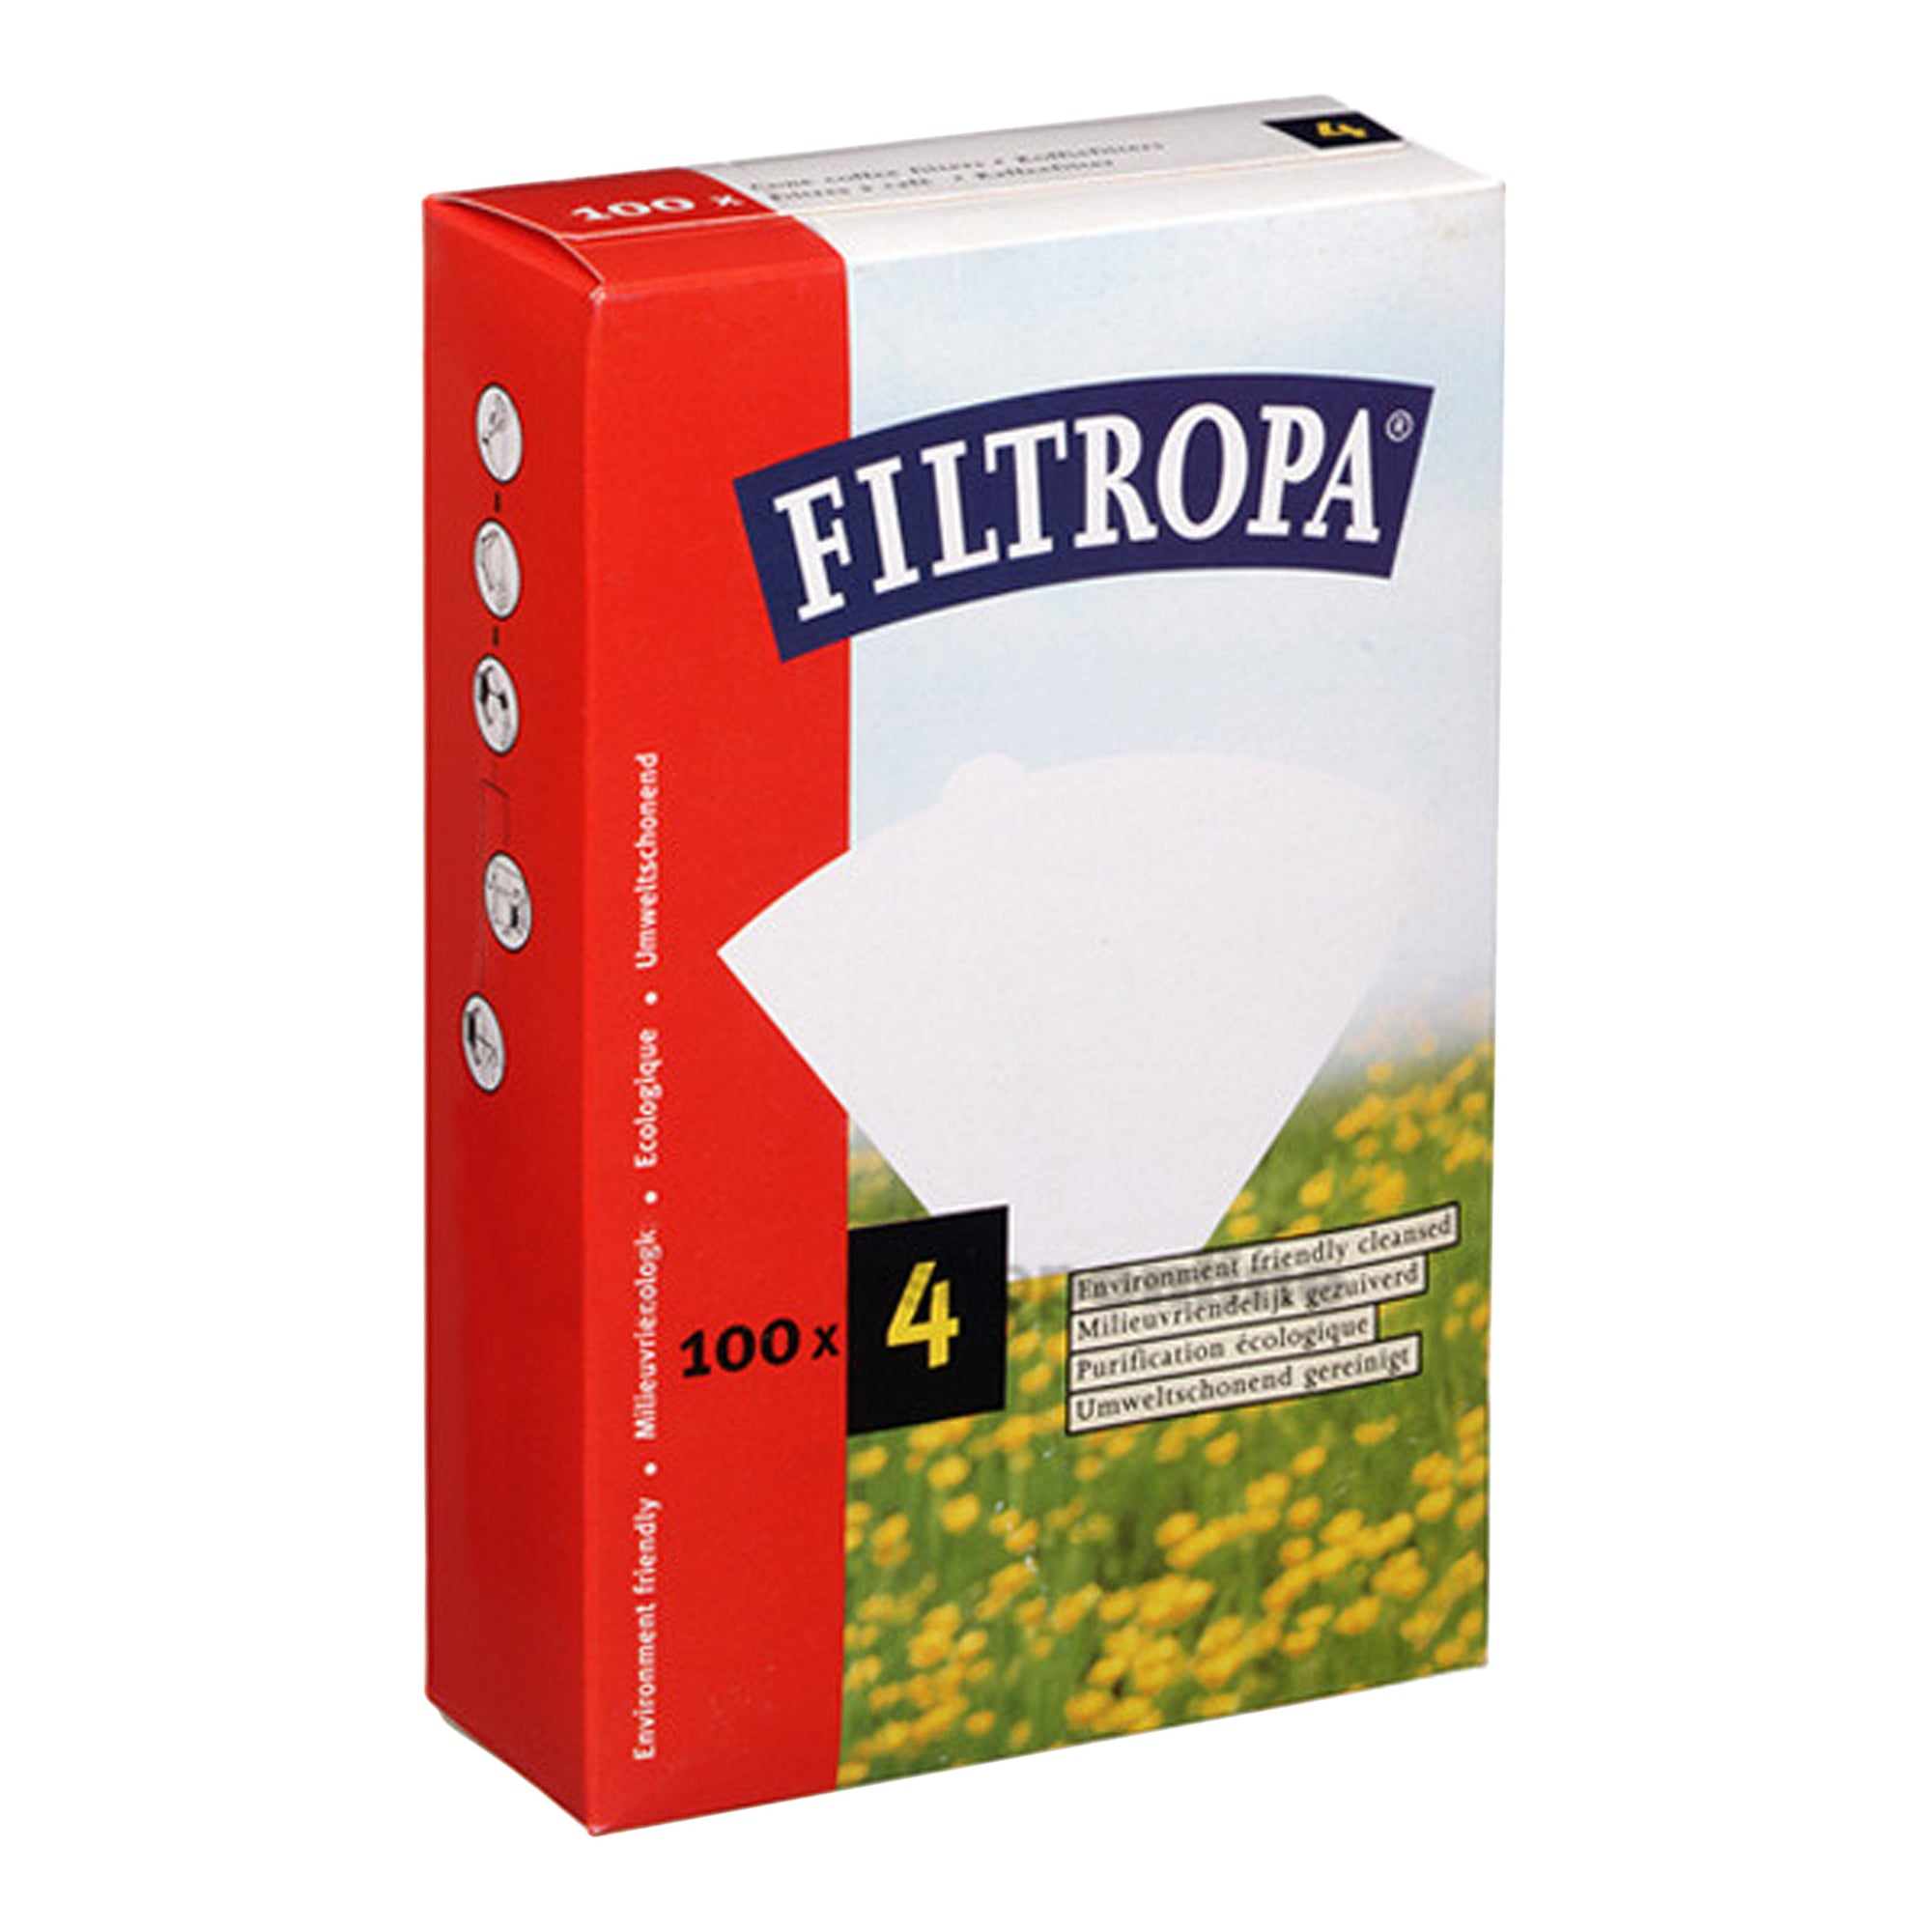 Filter paper Melitta style 100pcs - Filtropa - Espresso Gear